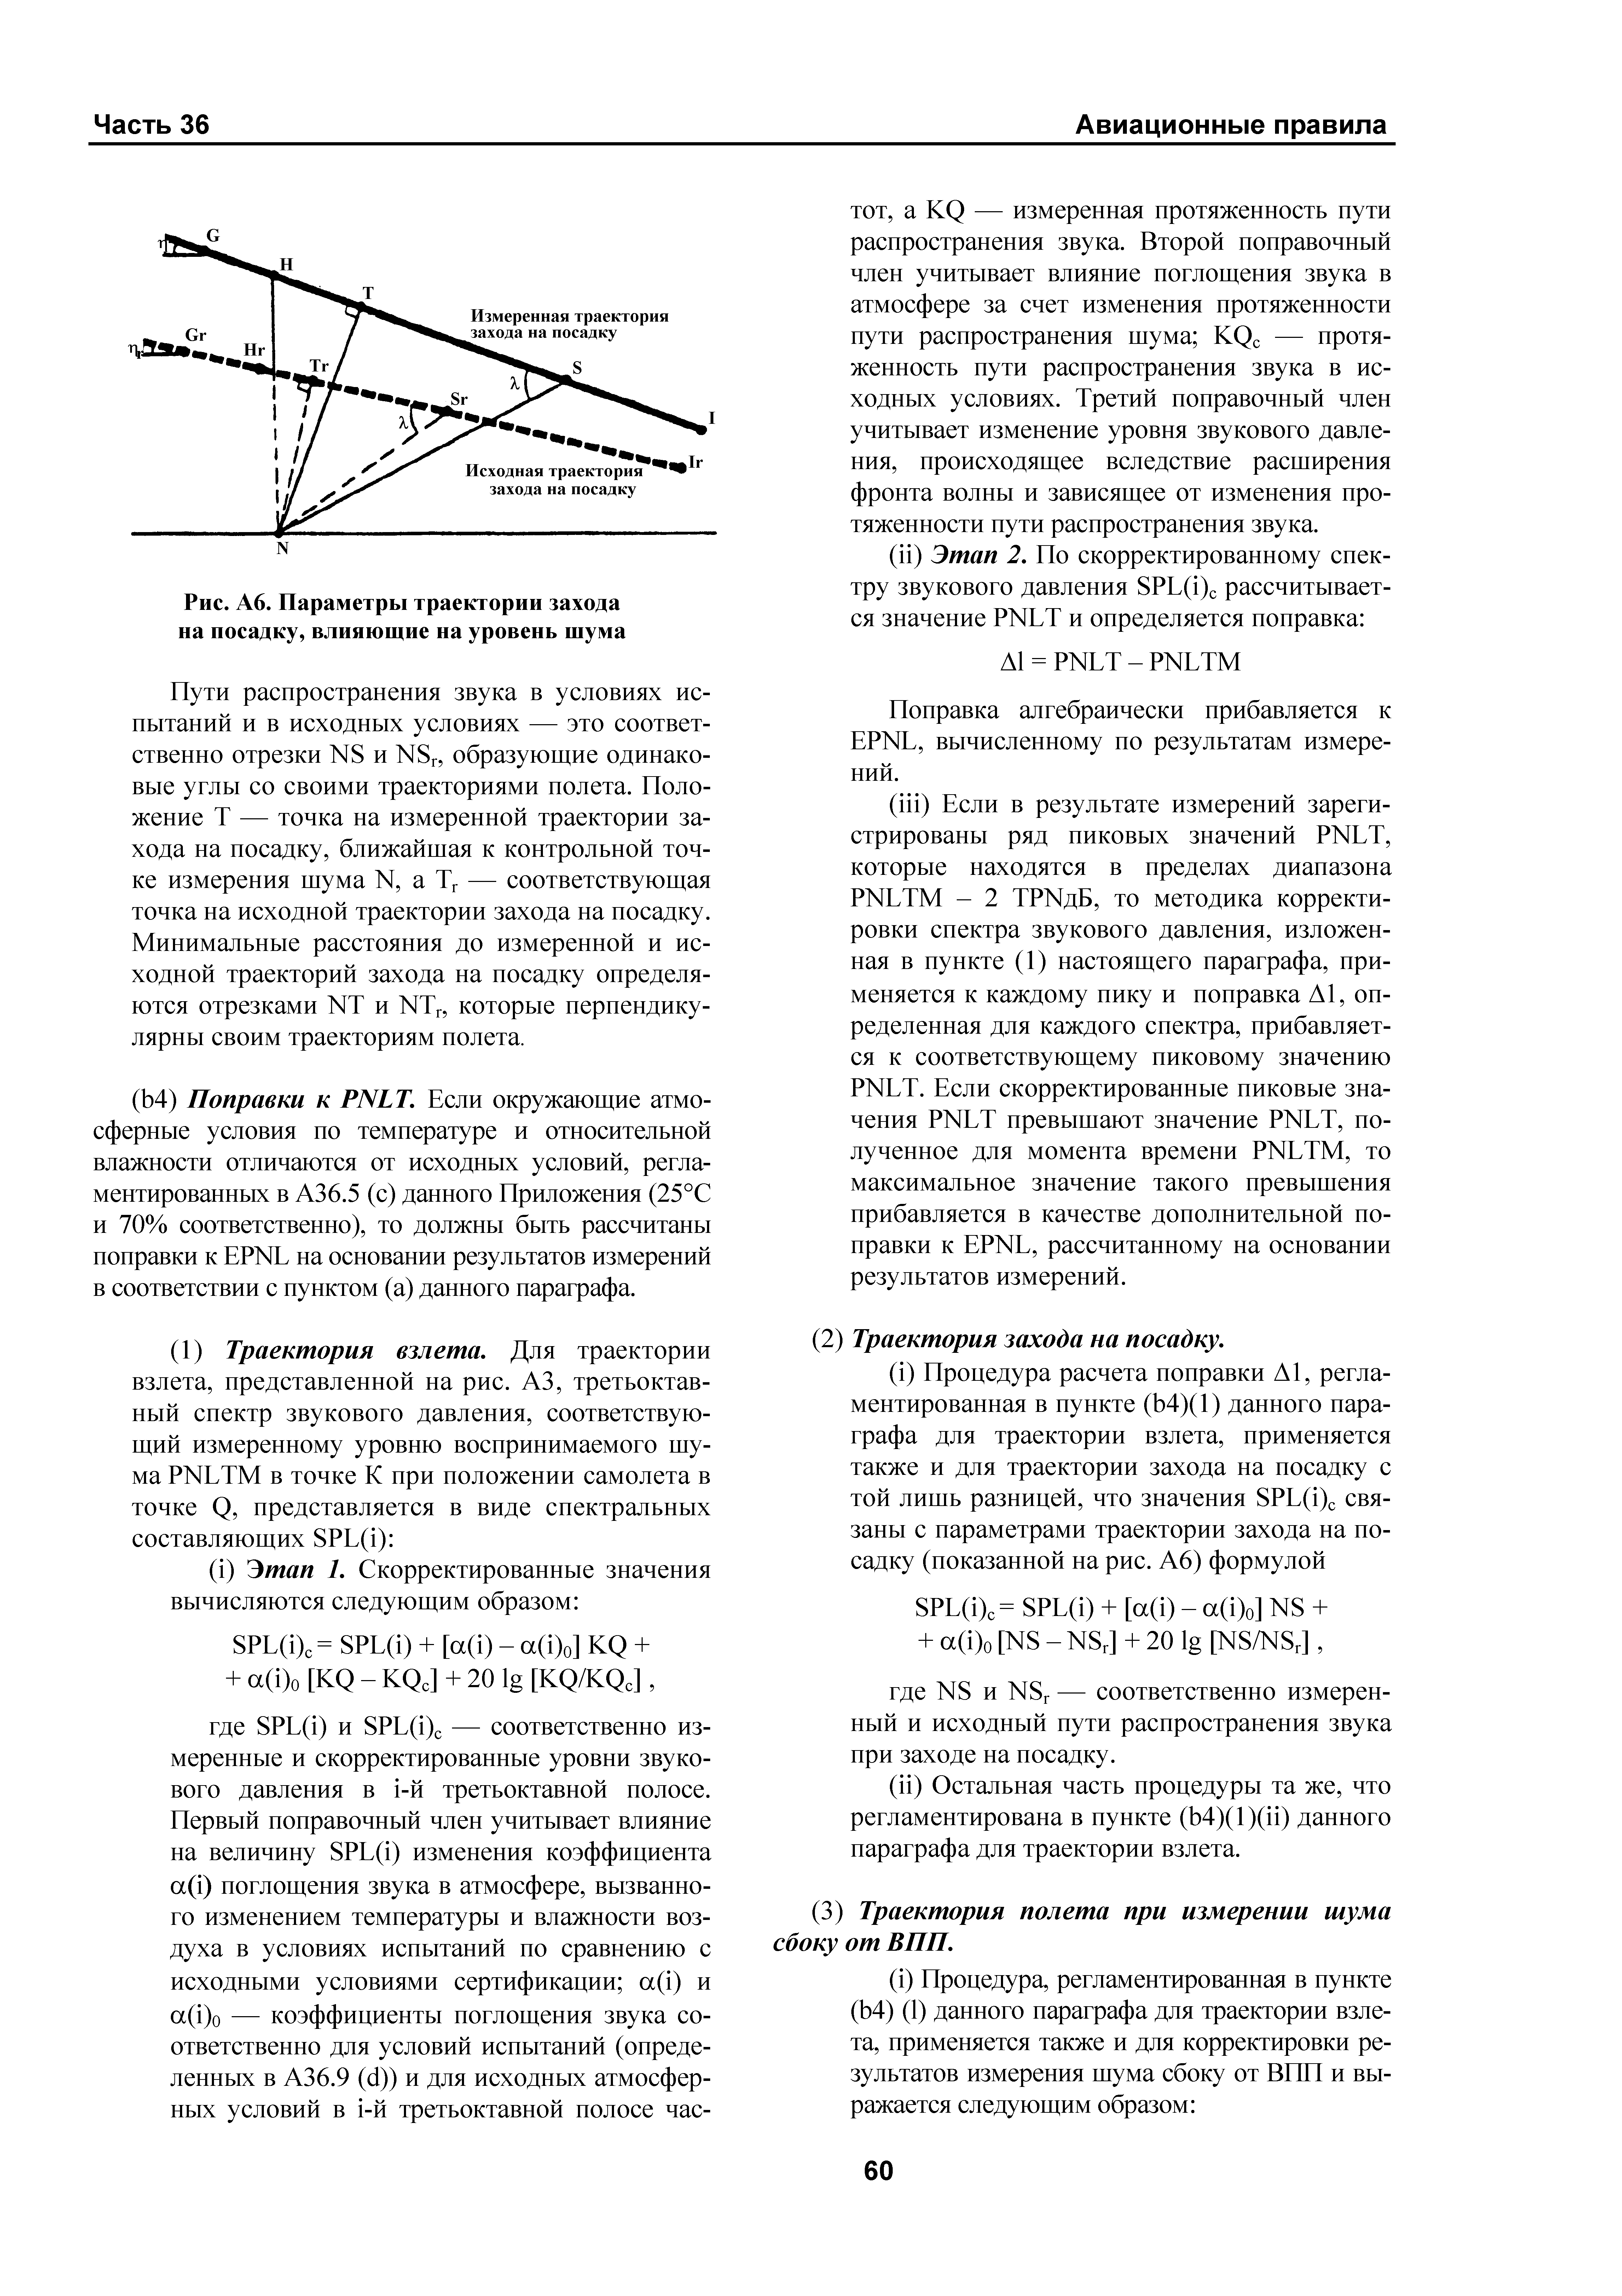 Авиационные правила Часть 36